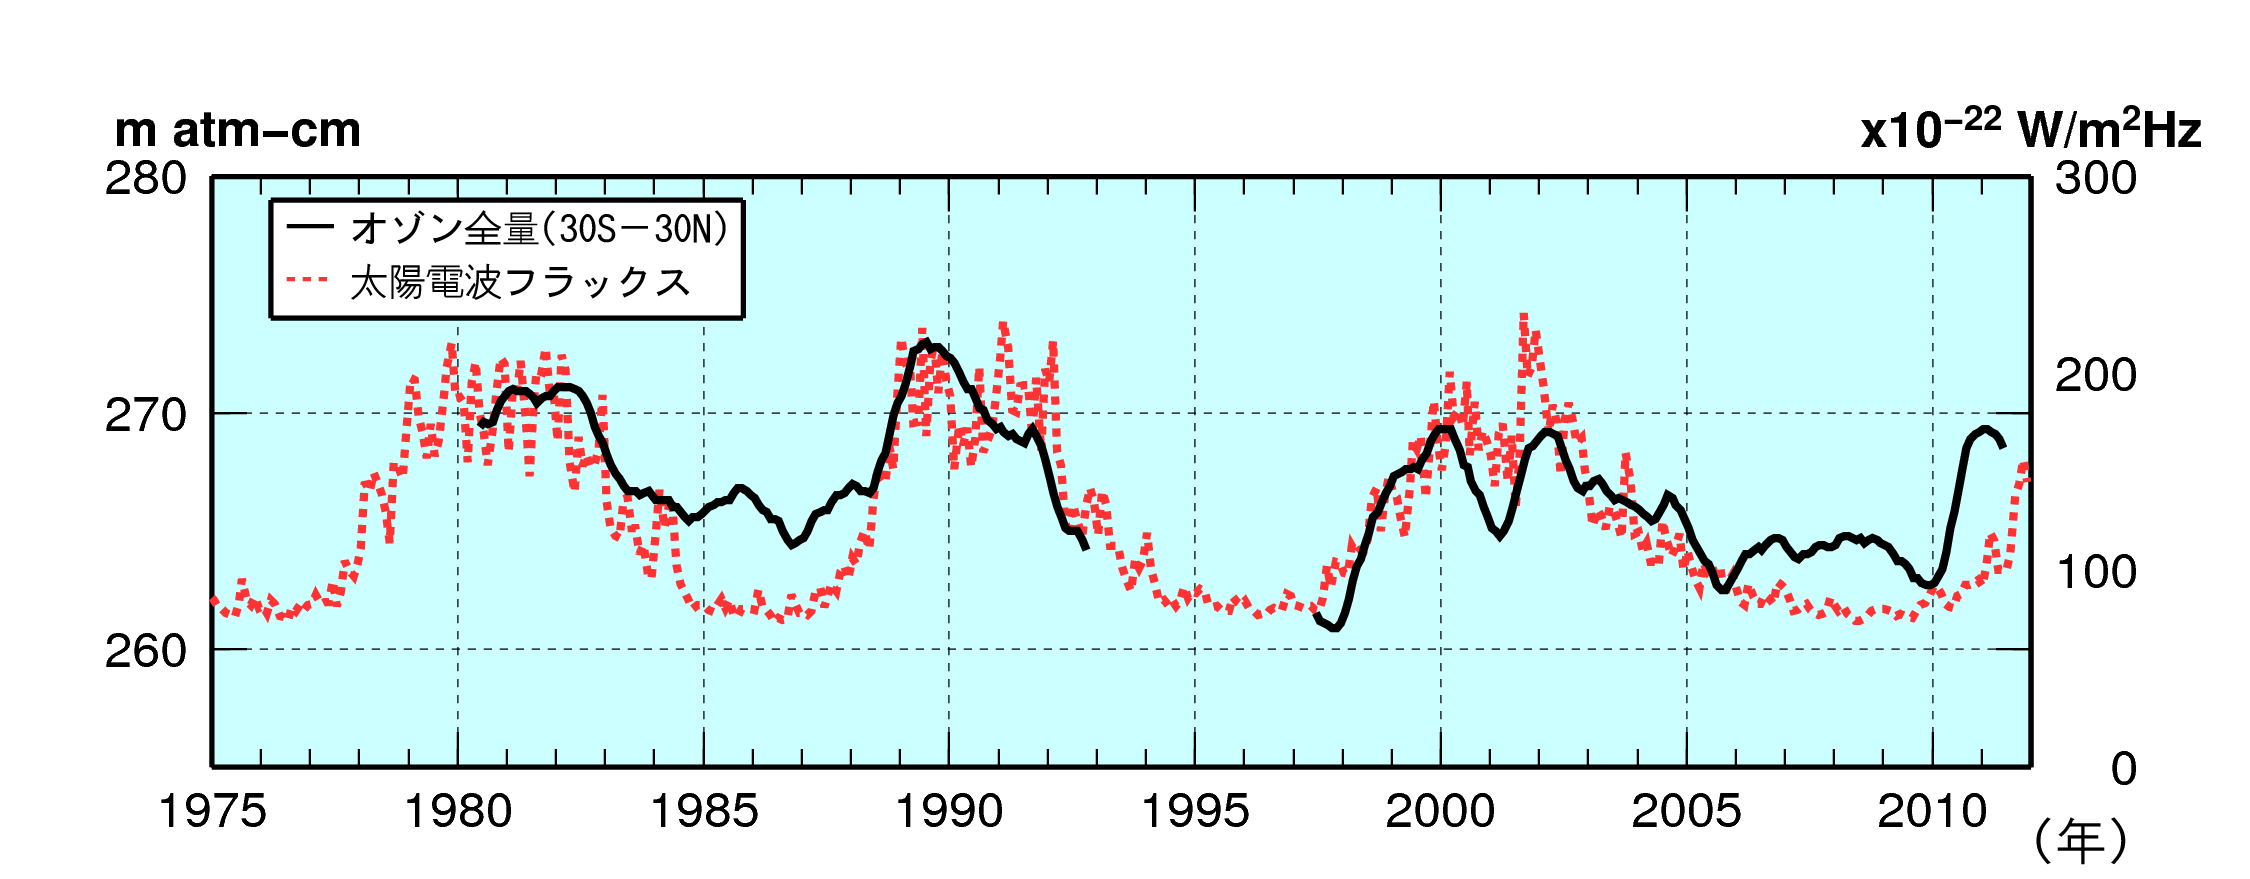 太陽活動と熱帯域の月平均オゾン全量との関係